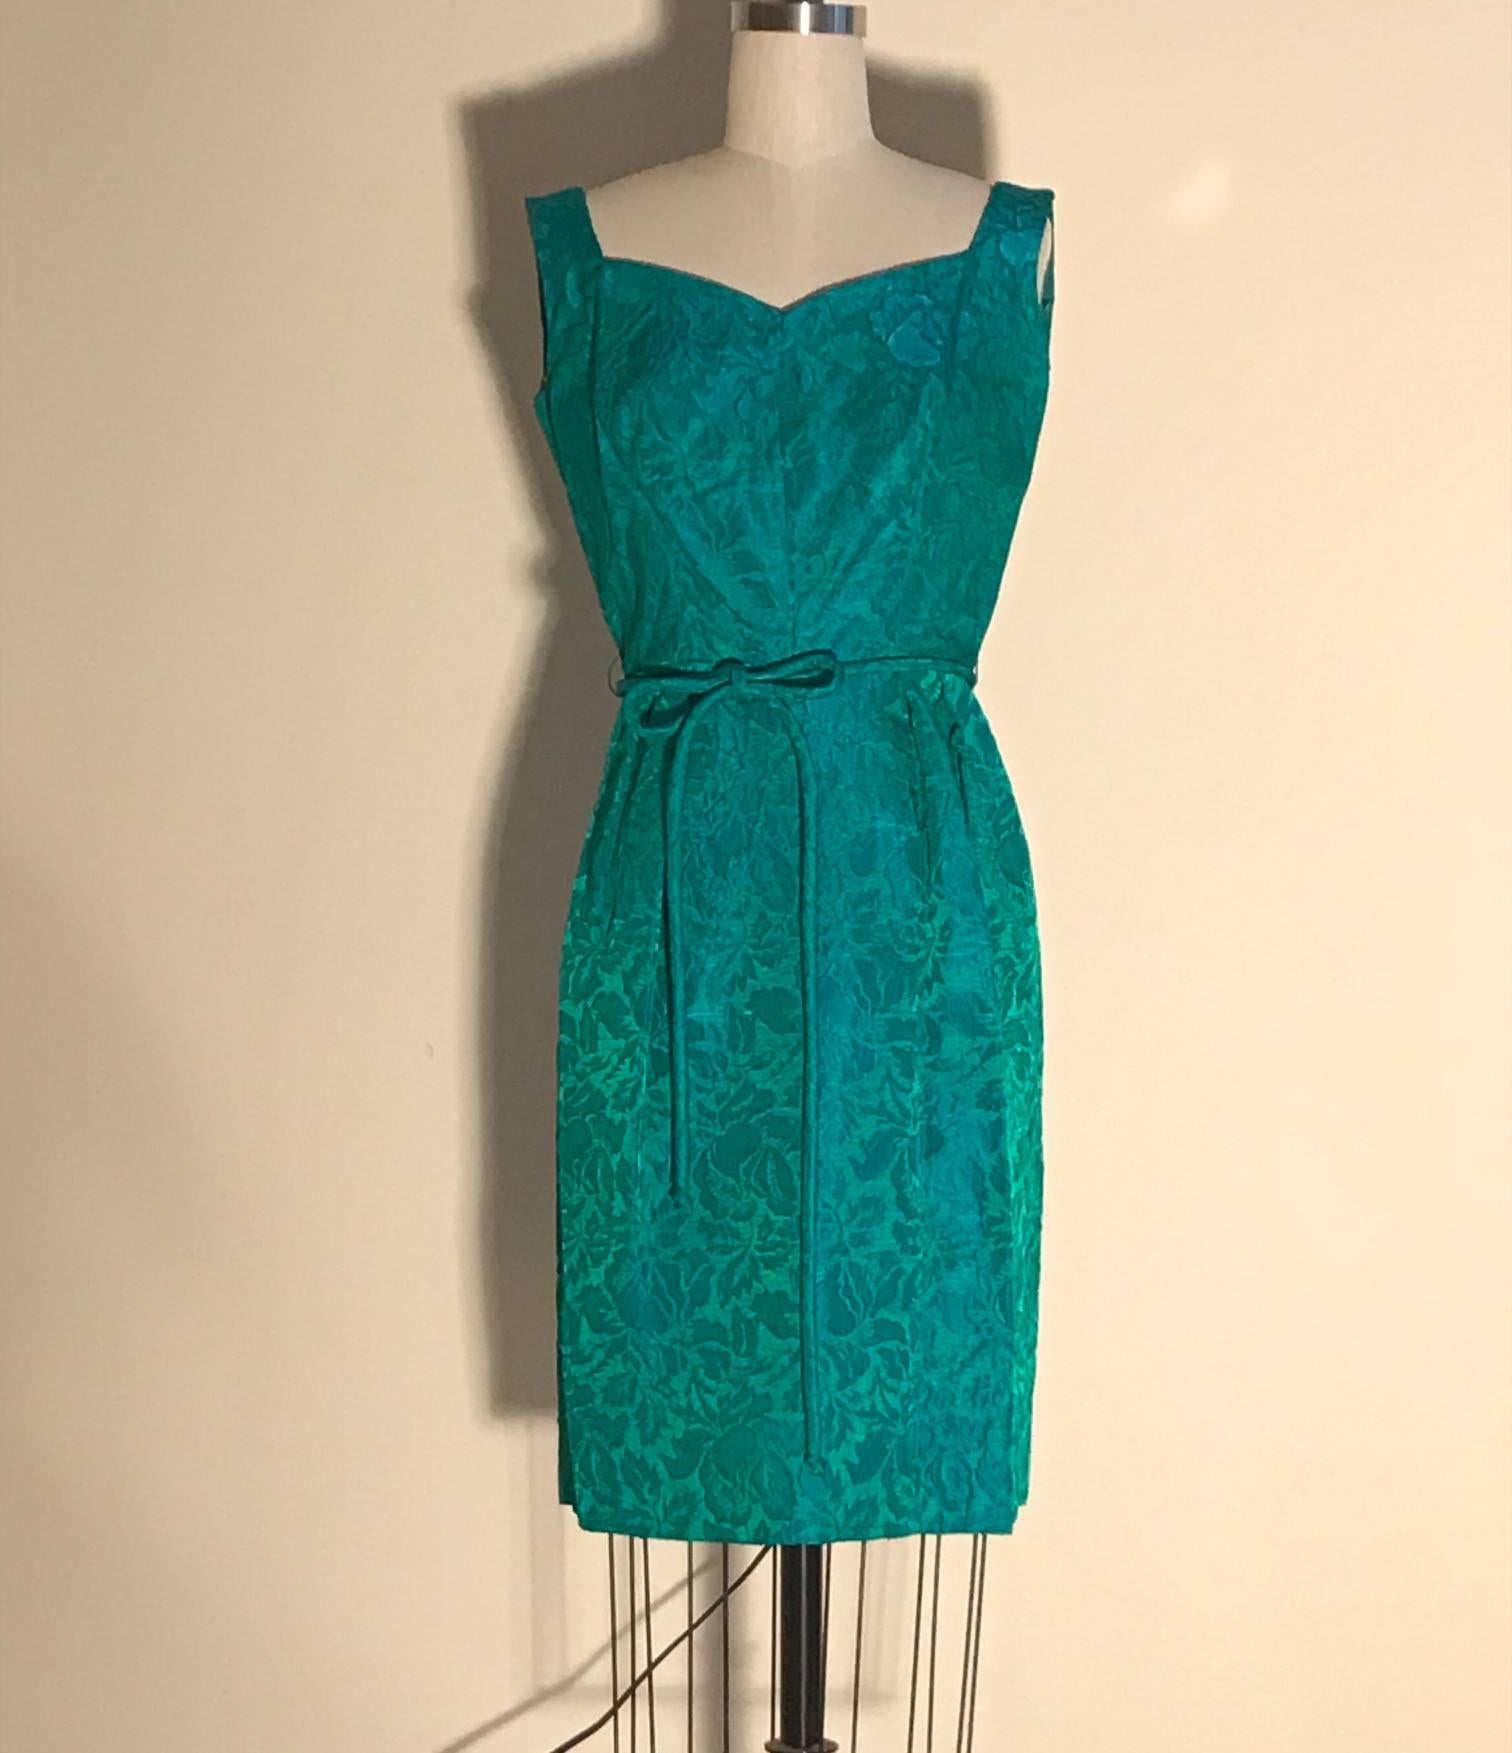 Joseph Magnin vintage des années 1950, robe droite en jacquard floral bleu et vert, vert avec des nuances de bleu. Ceinture à nouer à la taille, fermeture éclair et crochet au dos. Le manteau assorti à manches courtes a des fentes latérales